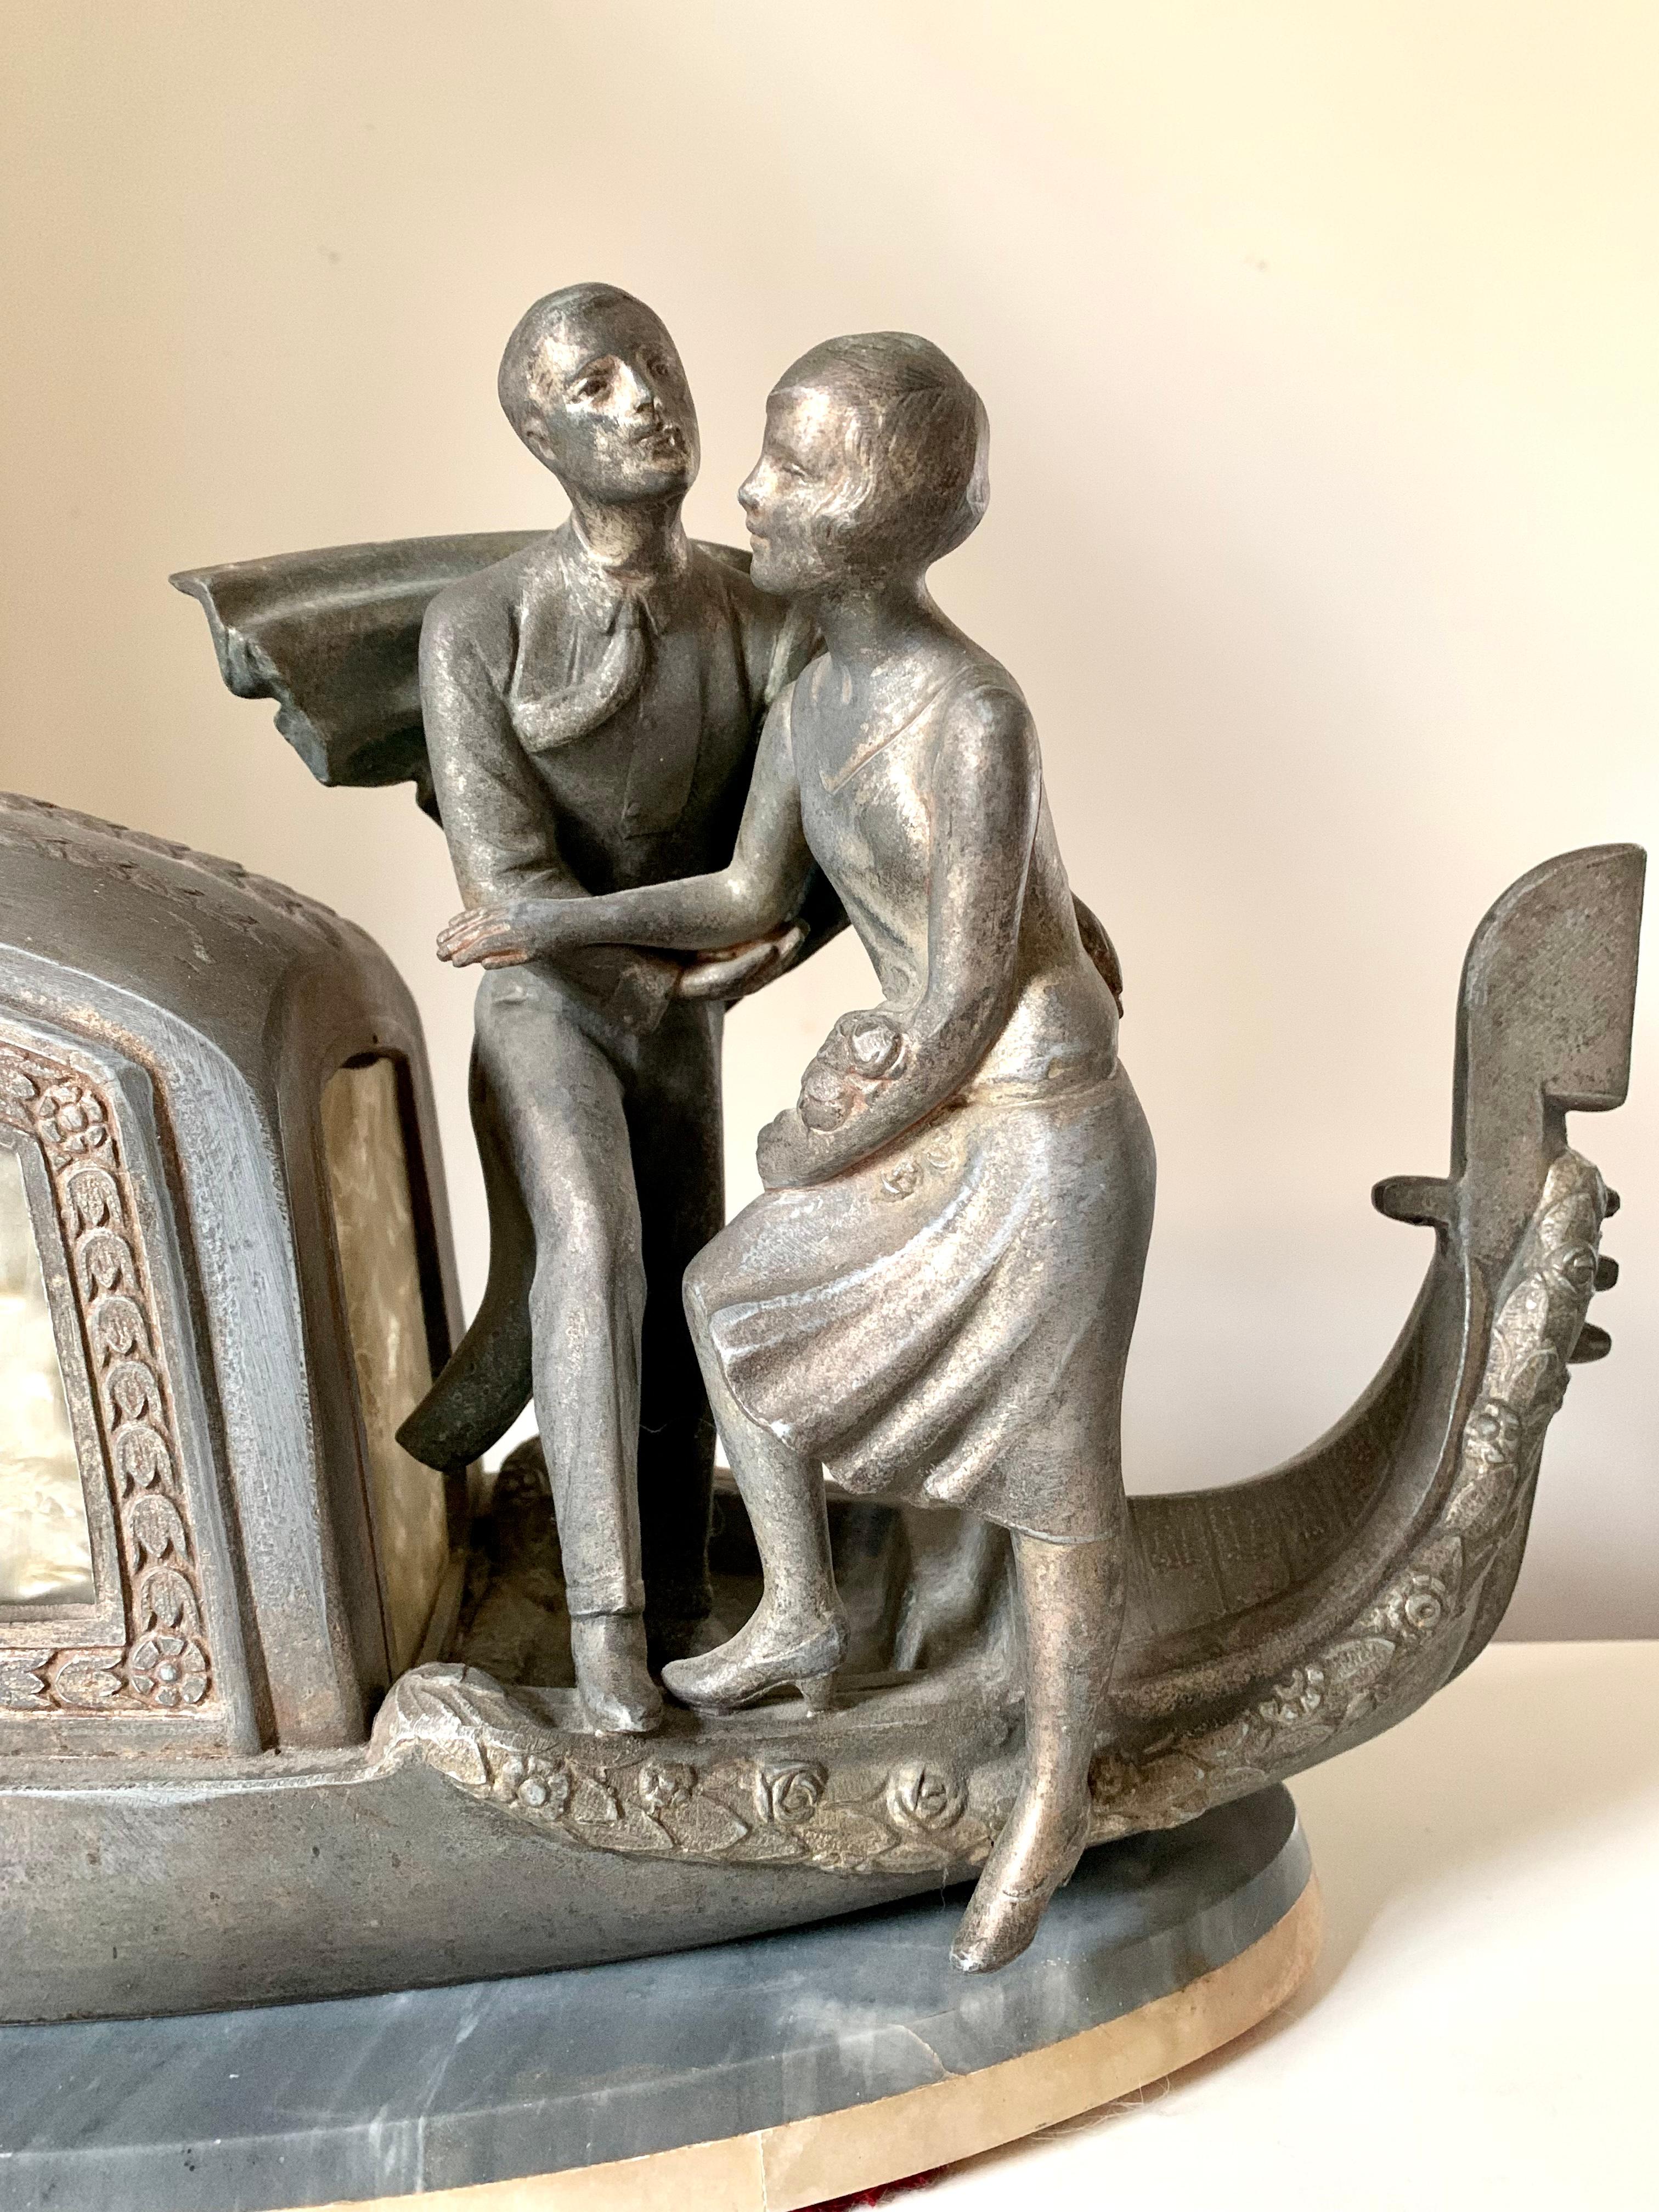 Eine versilberte venezianische Goldola, ein gut aussehender, lächelnder Gondoliere, ein schönes Paar, das sich auf eine romantische Reise begibt, eine fabelhafte französische Art-déco-Lampe von Pierre Sega.
CIRCA 1920
Versilbertes Metall,